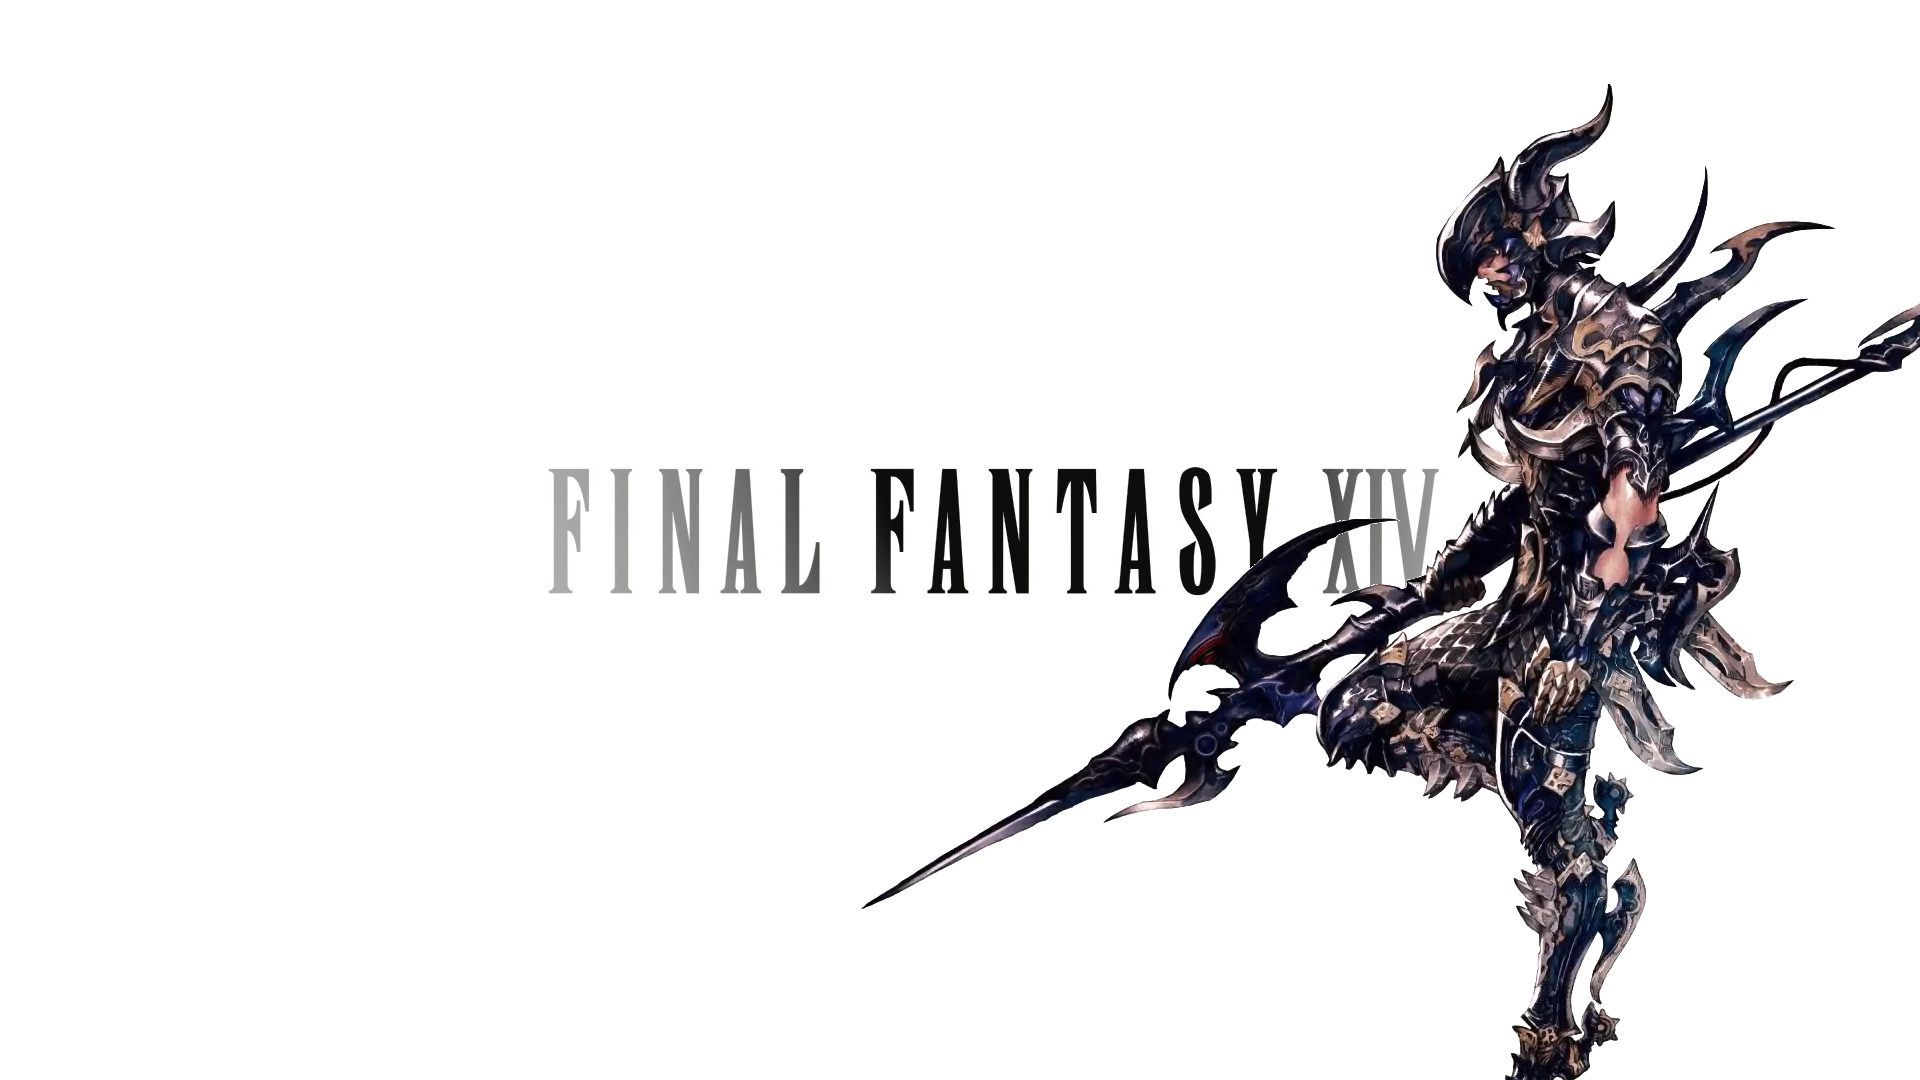 Final Fantasy Xiv HD Wallpaper Background